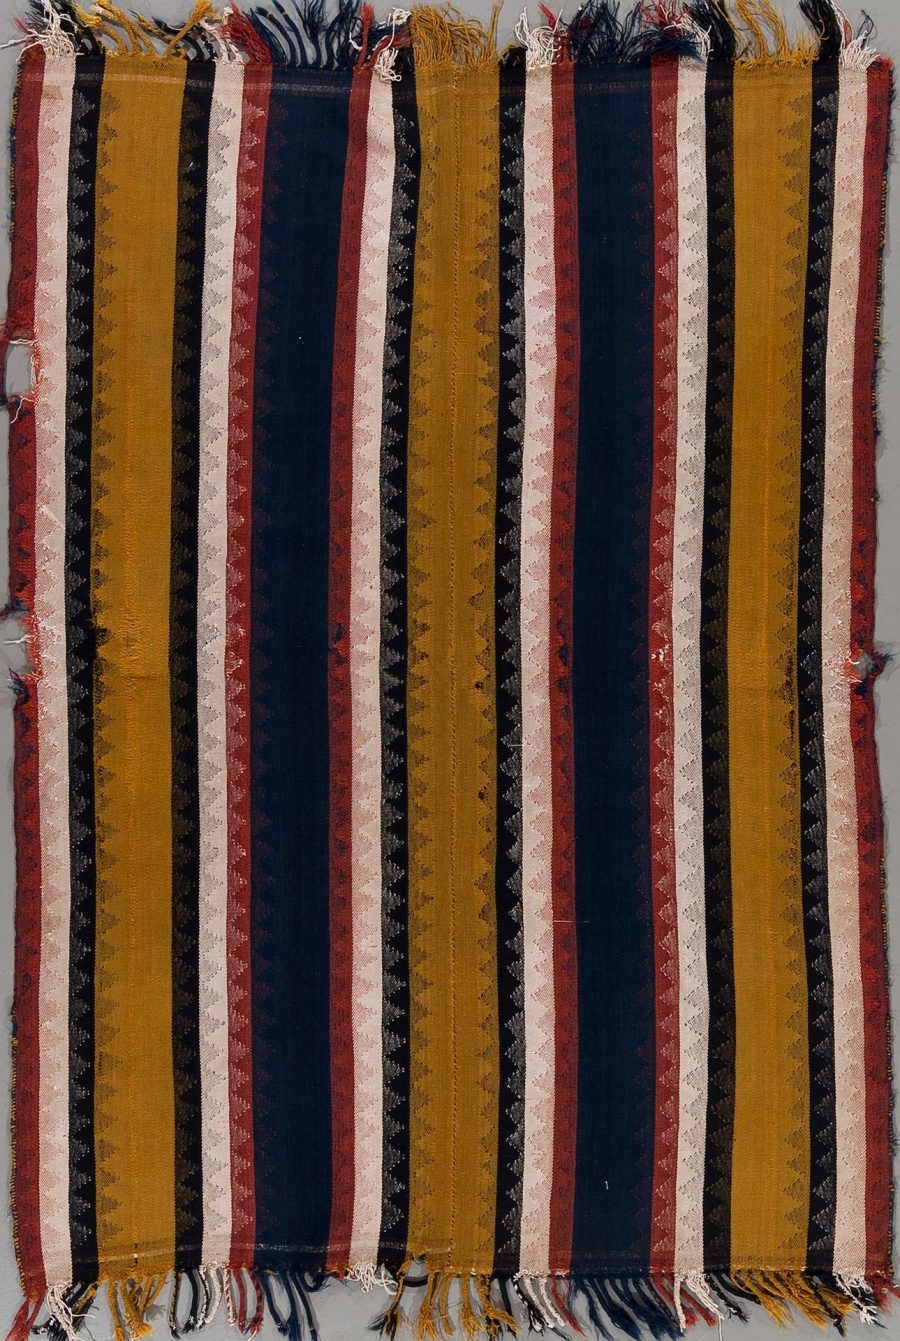 Farbenfrohes, gestreiftes Textil mit vertikalen Streifen in Blau, Rot, Gold und Beige, das an den Rändern ausgefranst ist.